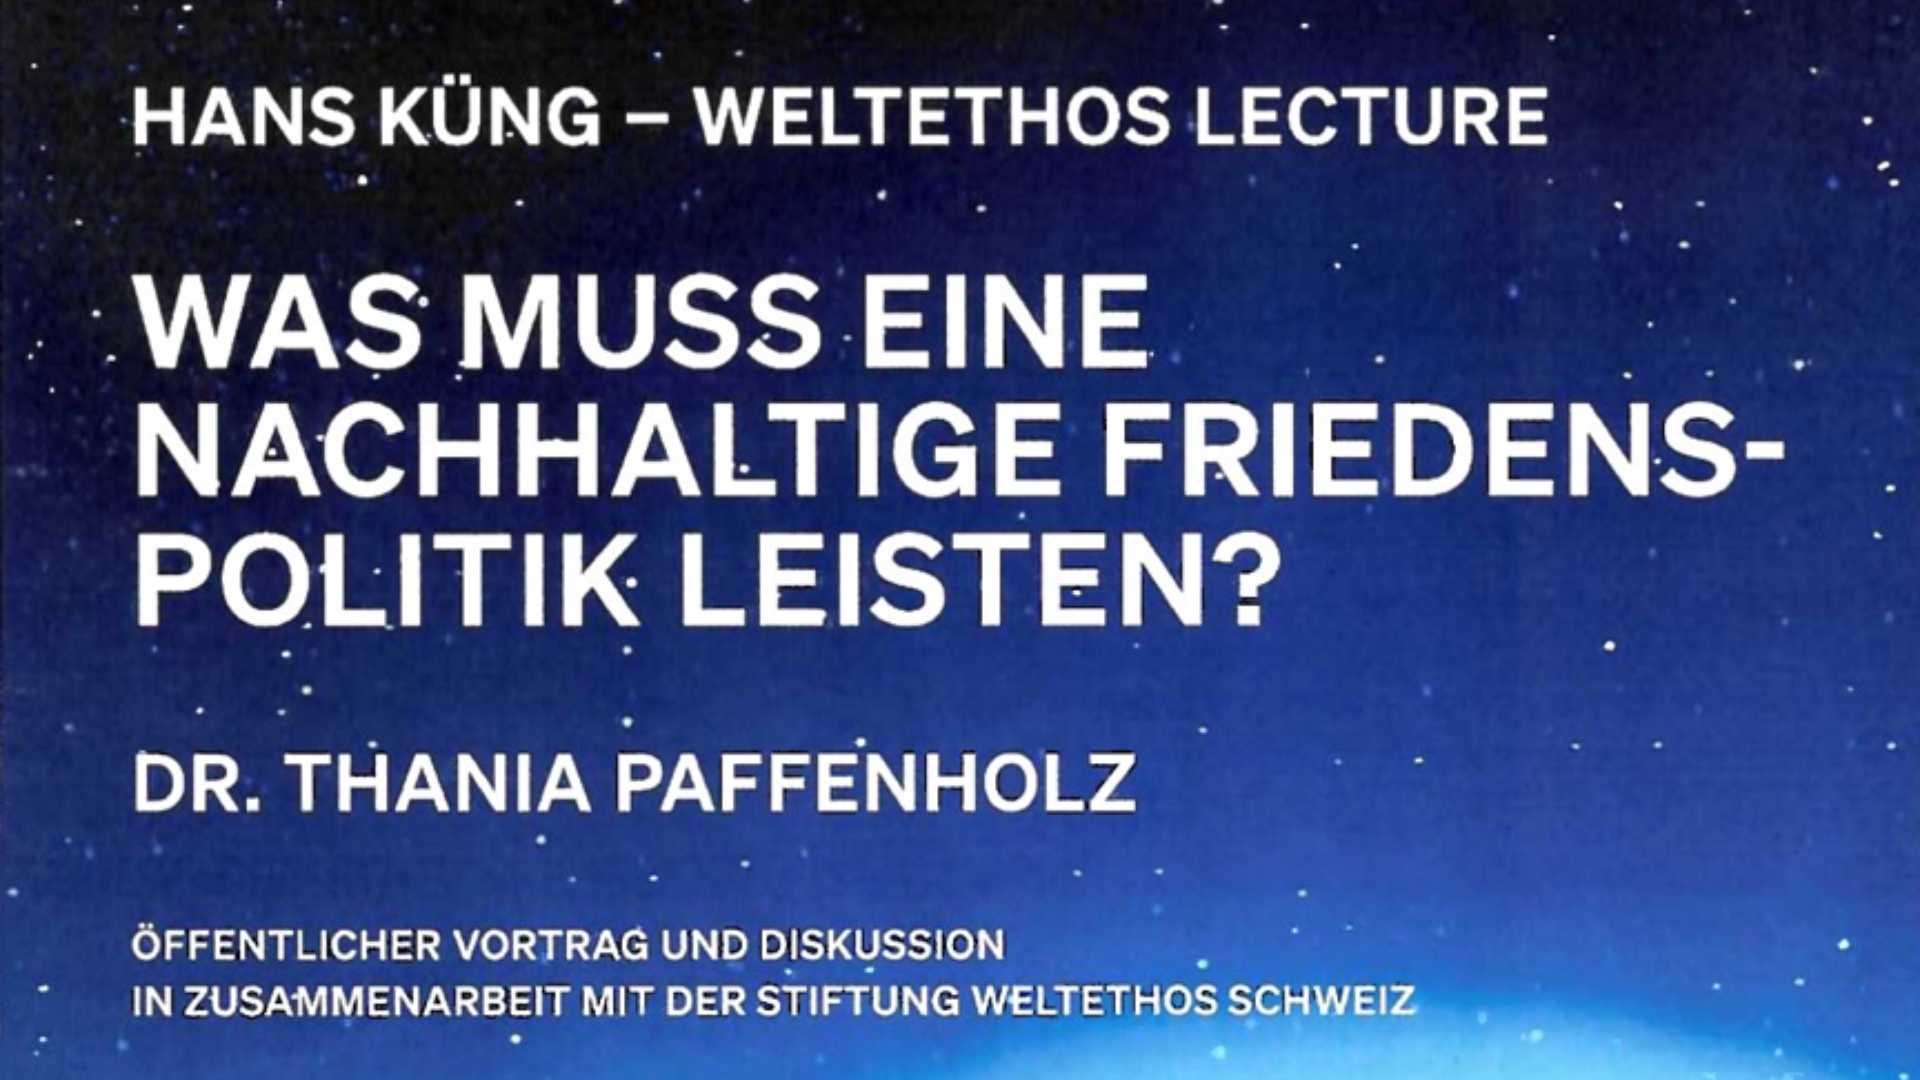 Das Titelbild der 2. Weltethos Lecture